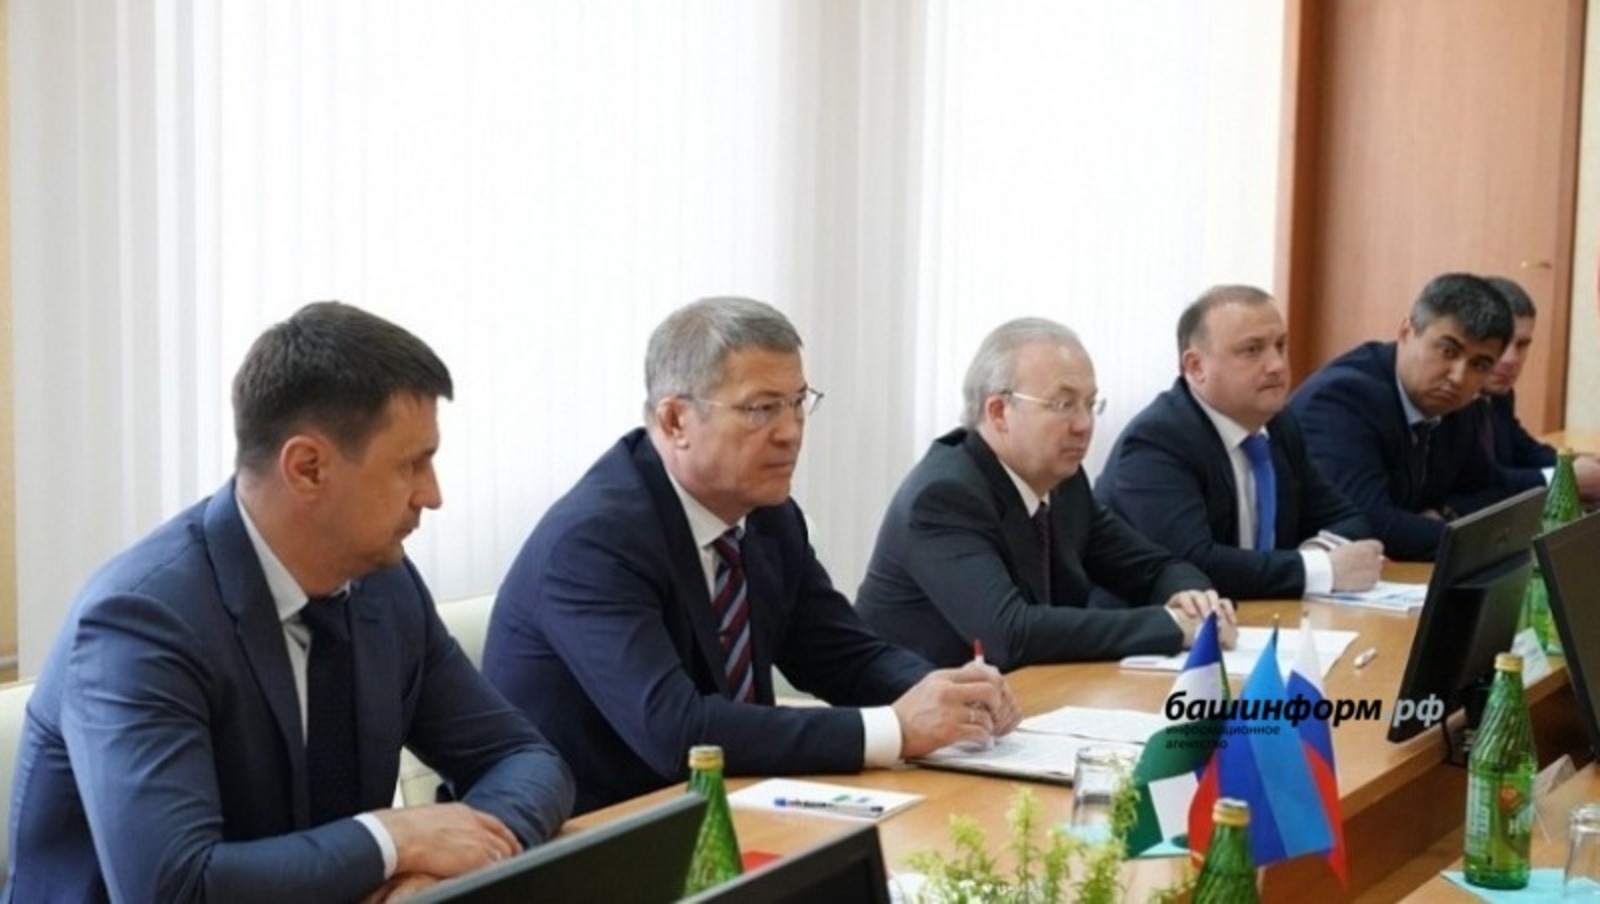 Эксперты высказались про визит Хабирова в Луганск